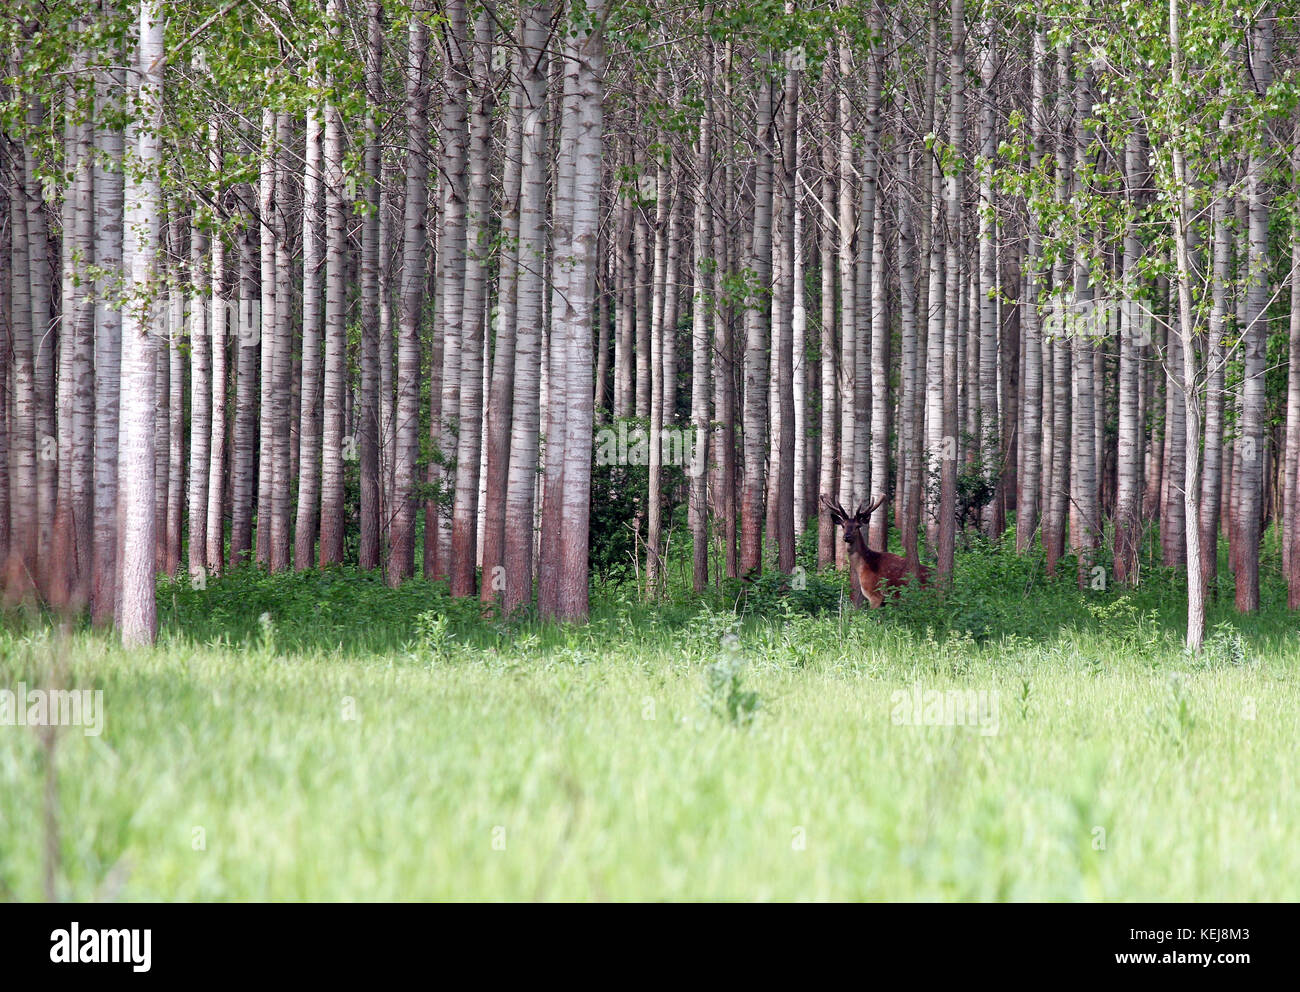 deer standing in forest wildlife Stock Photo